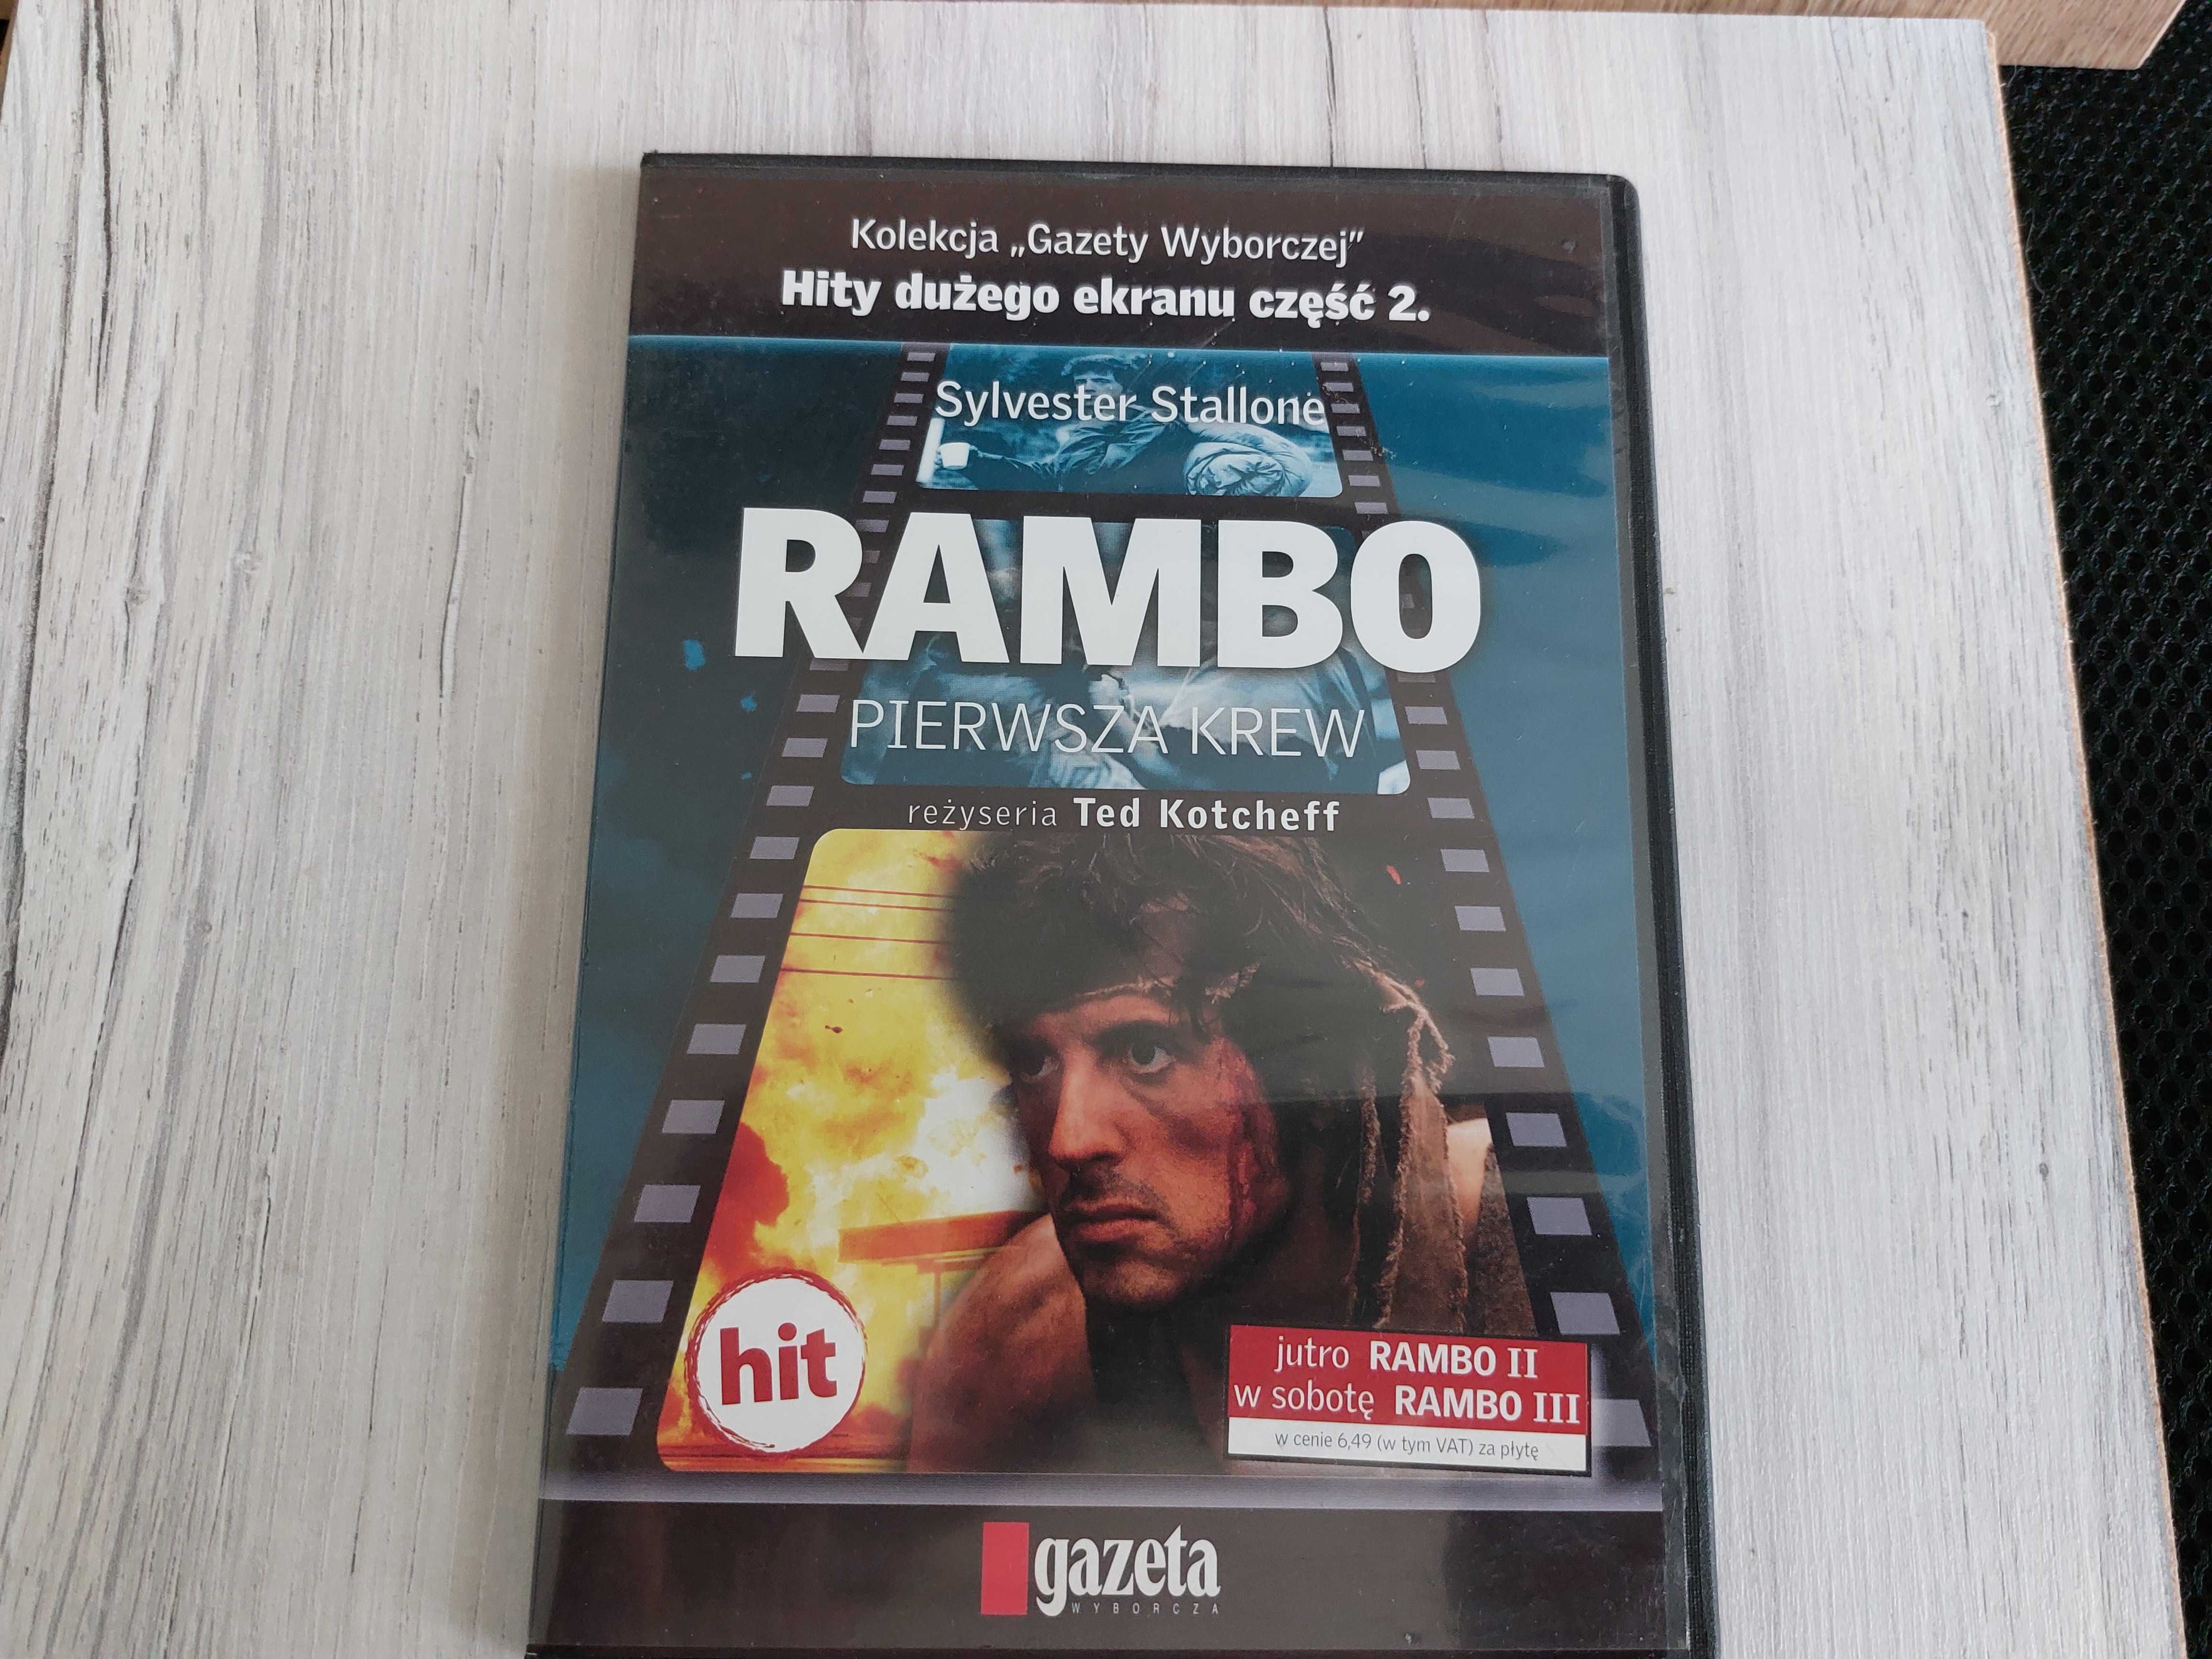 „Rambo, pierwsza krew”, płyta DVD, kolekcja Gazety Wyborczej